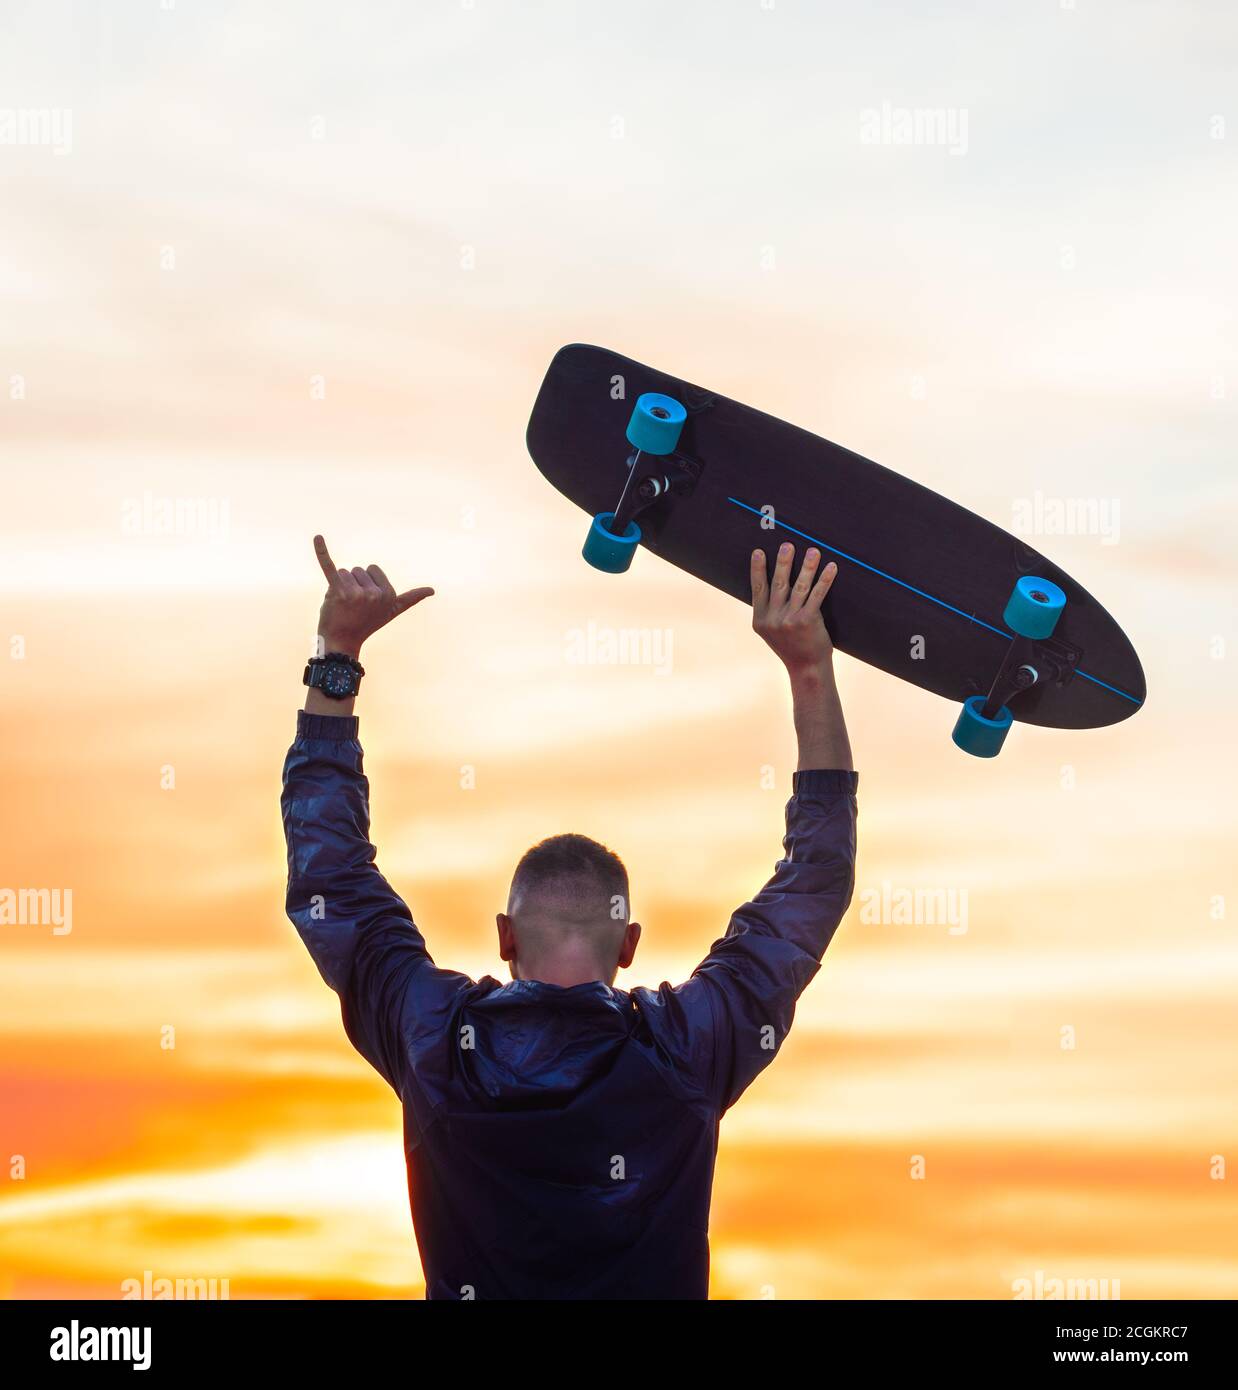 Man enjoying carefree life on sunset. Holds skateboard and showing shaka  sign Stock Photo - Alamy